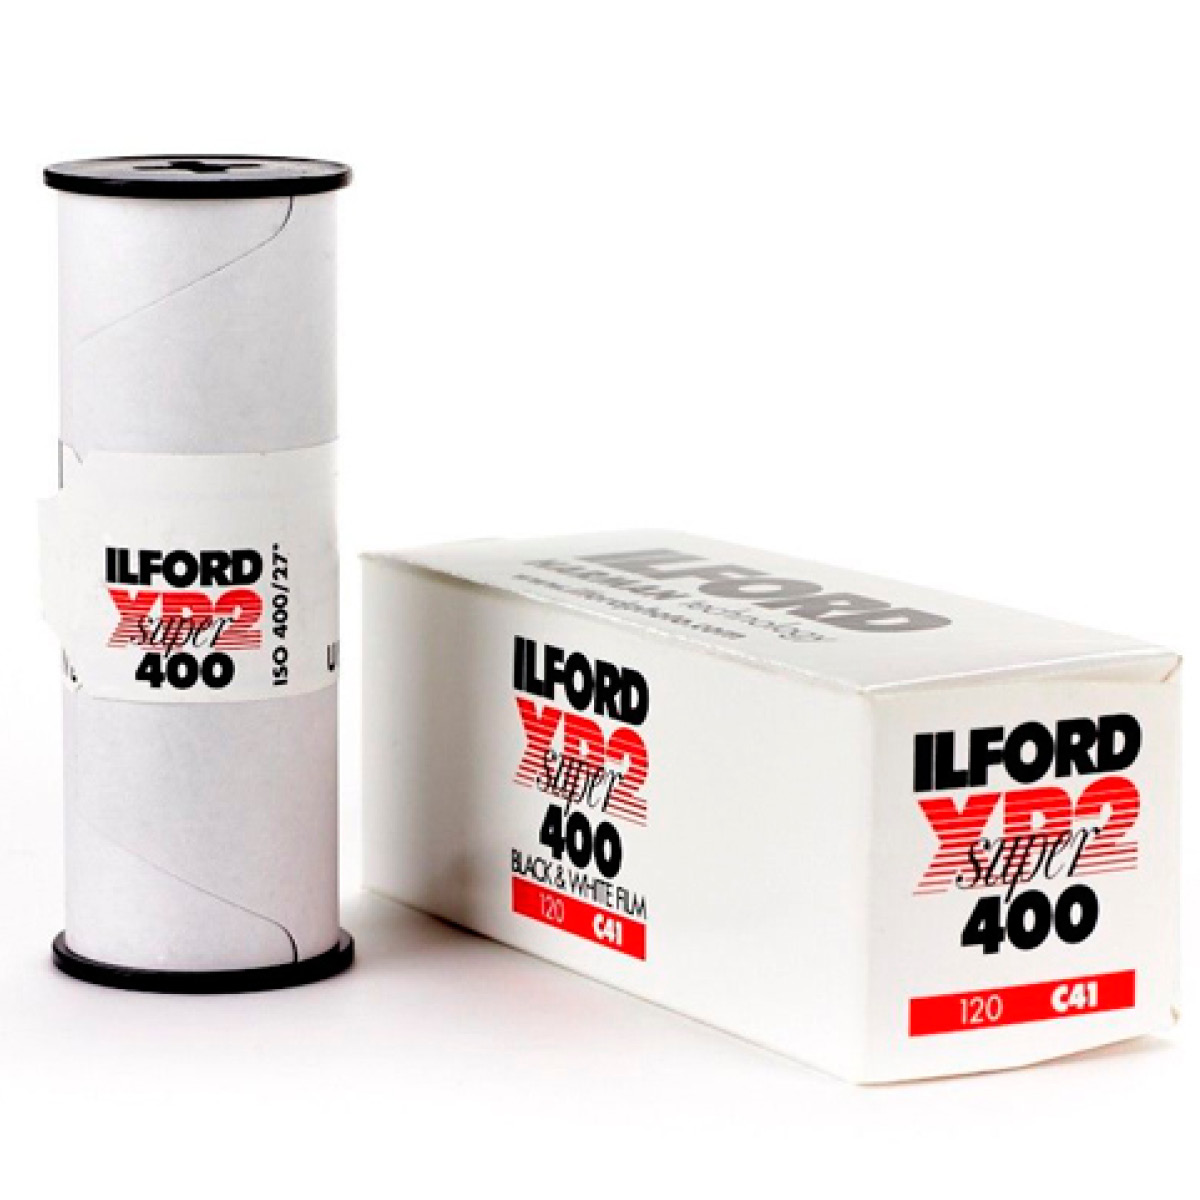 Ilford XP 2 Super ISO 400 120 Rollfilm